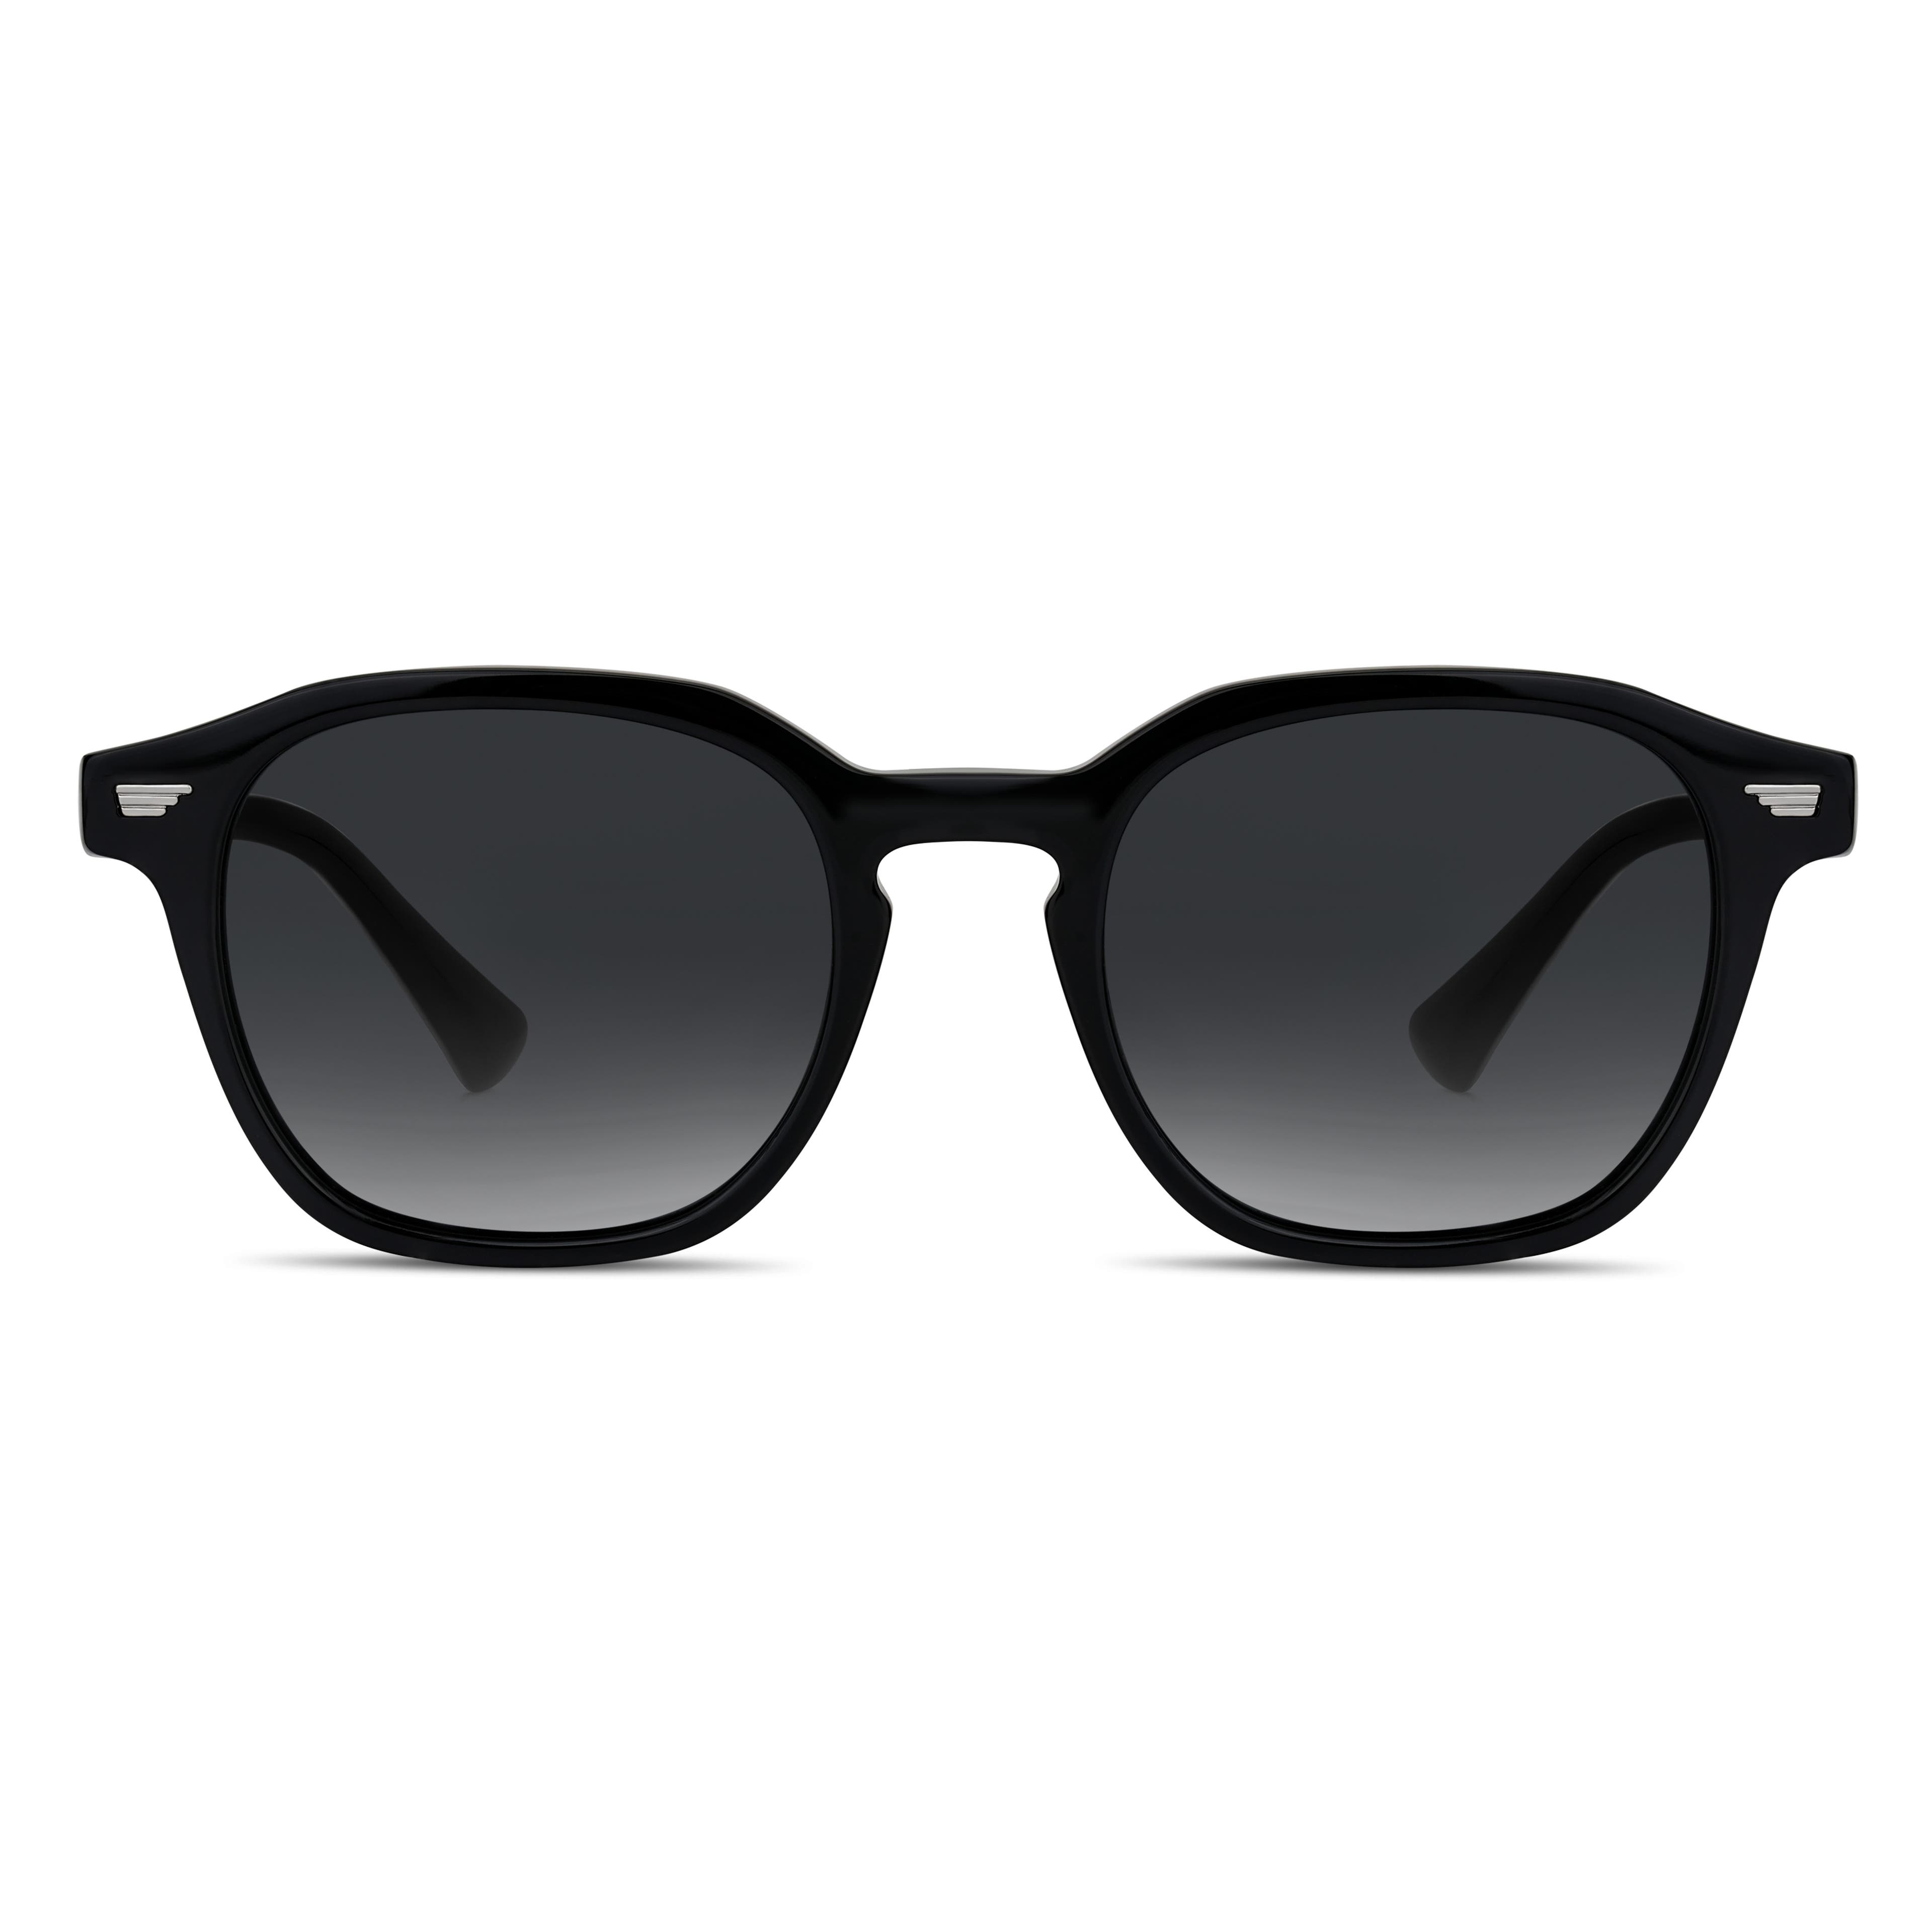 Schwarz geometrische Hornrand-Polaroid-Sonnenbrille





